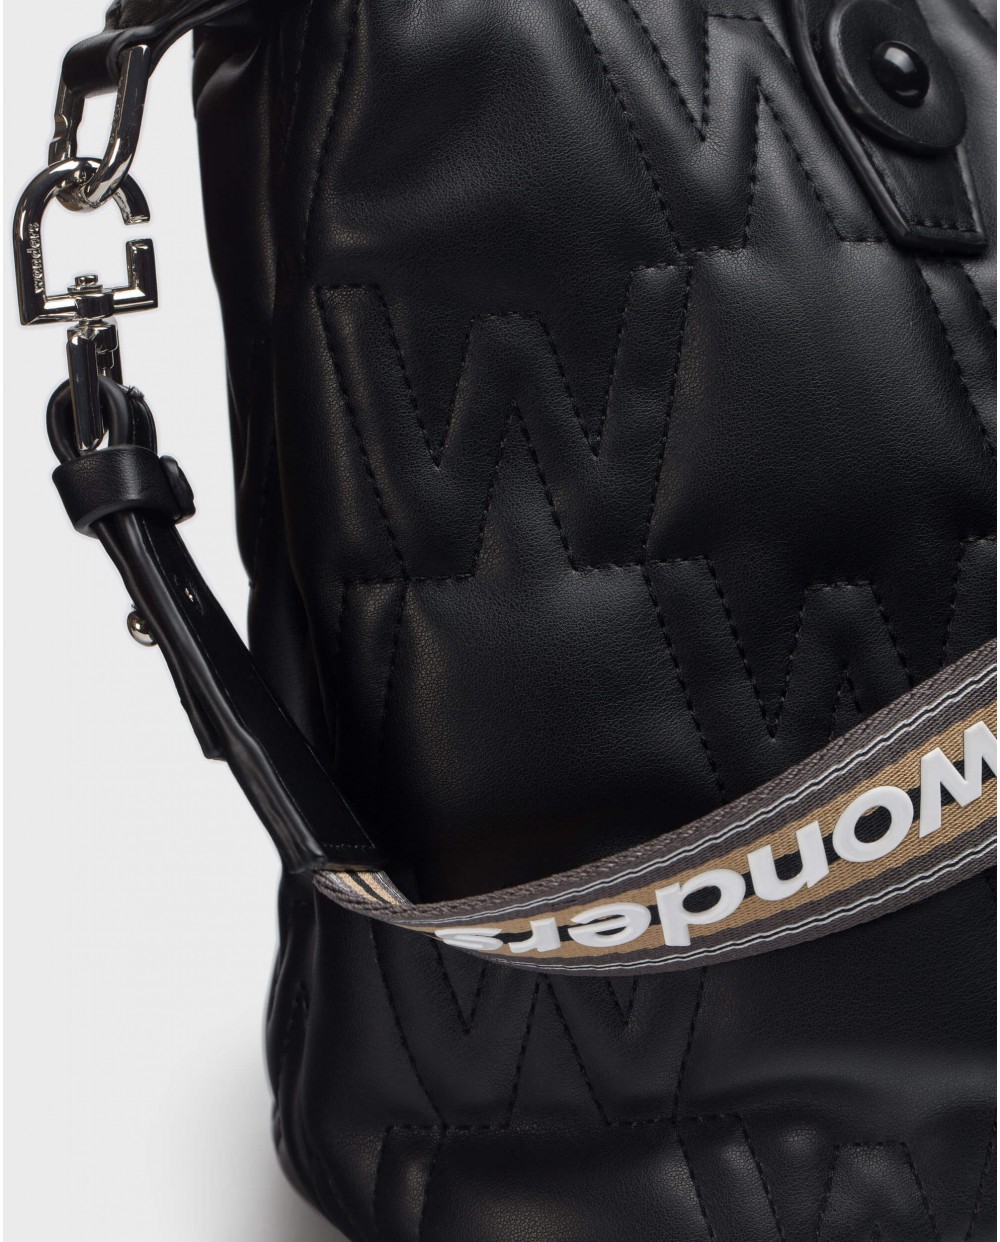 Wonders-Bags-Black quilted bag